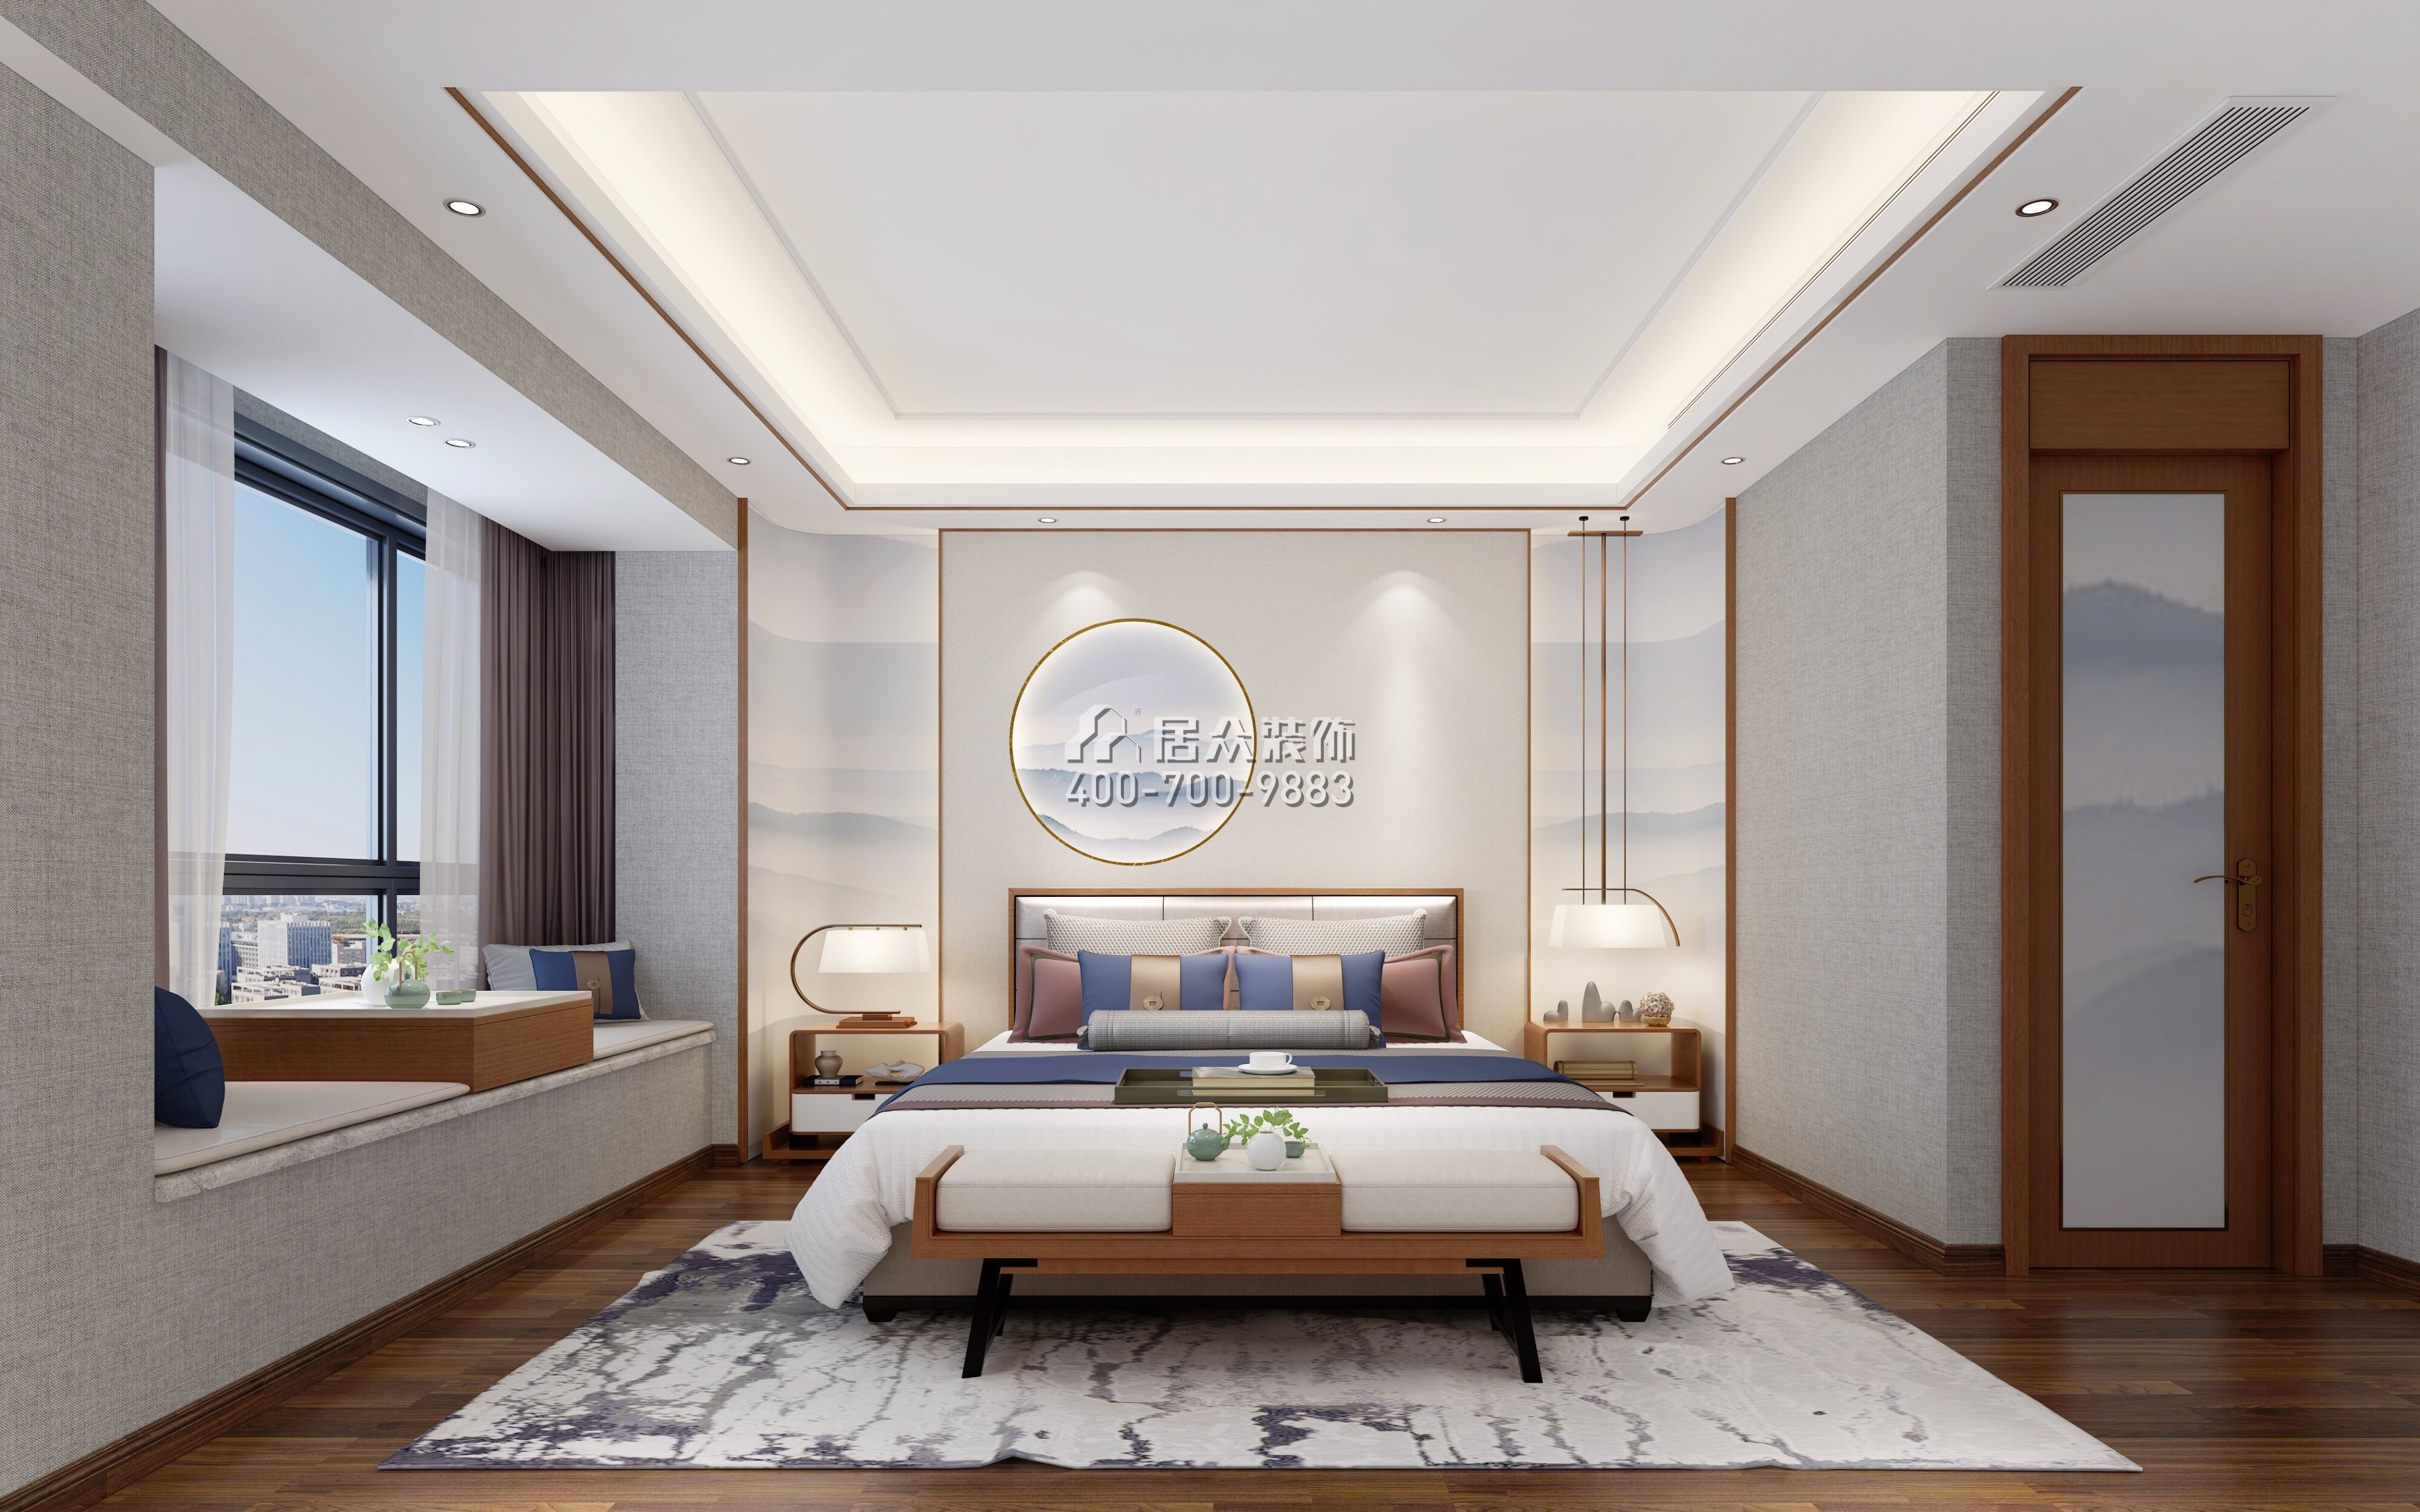 龙瑞佳园148平方米中式风格平层户型卧室装修效果图